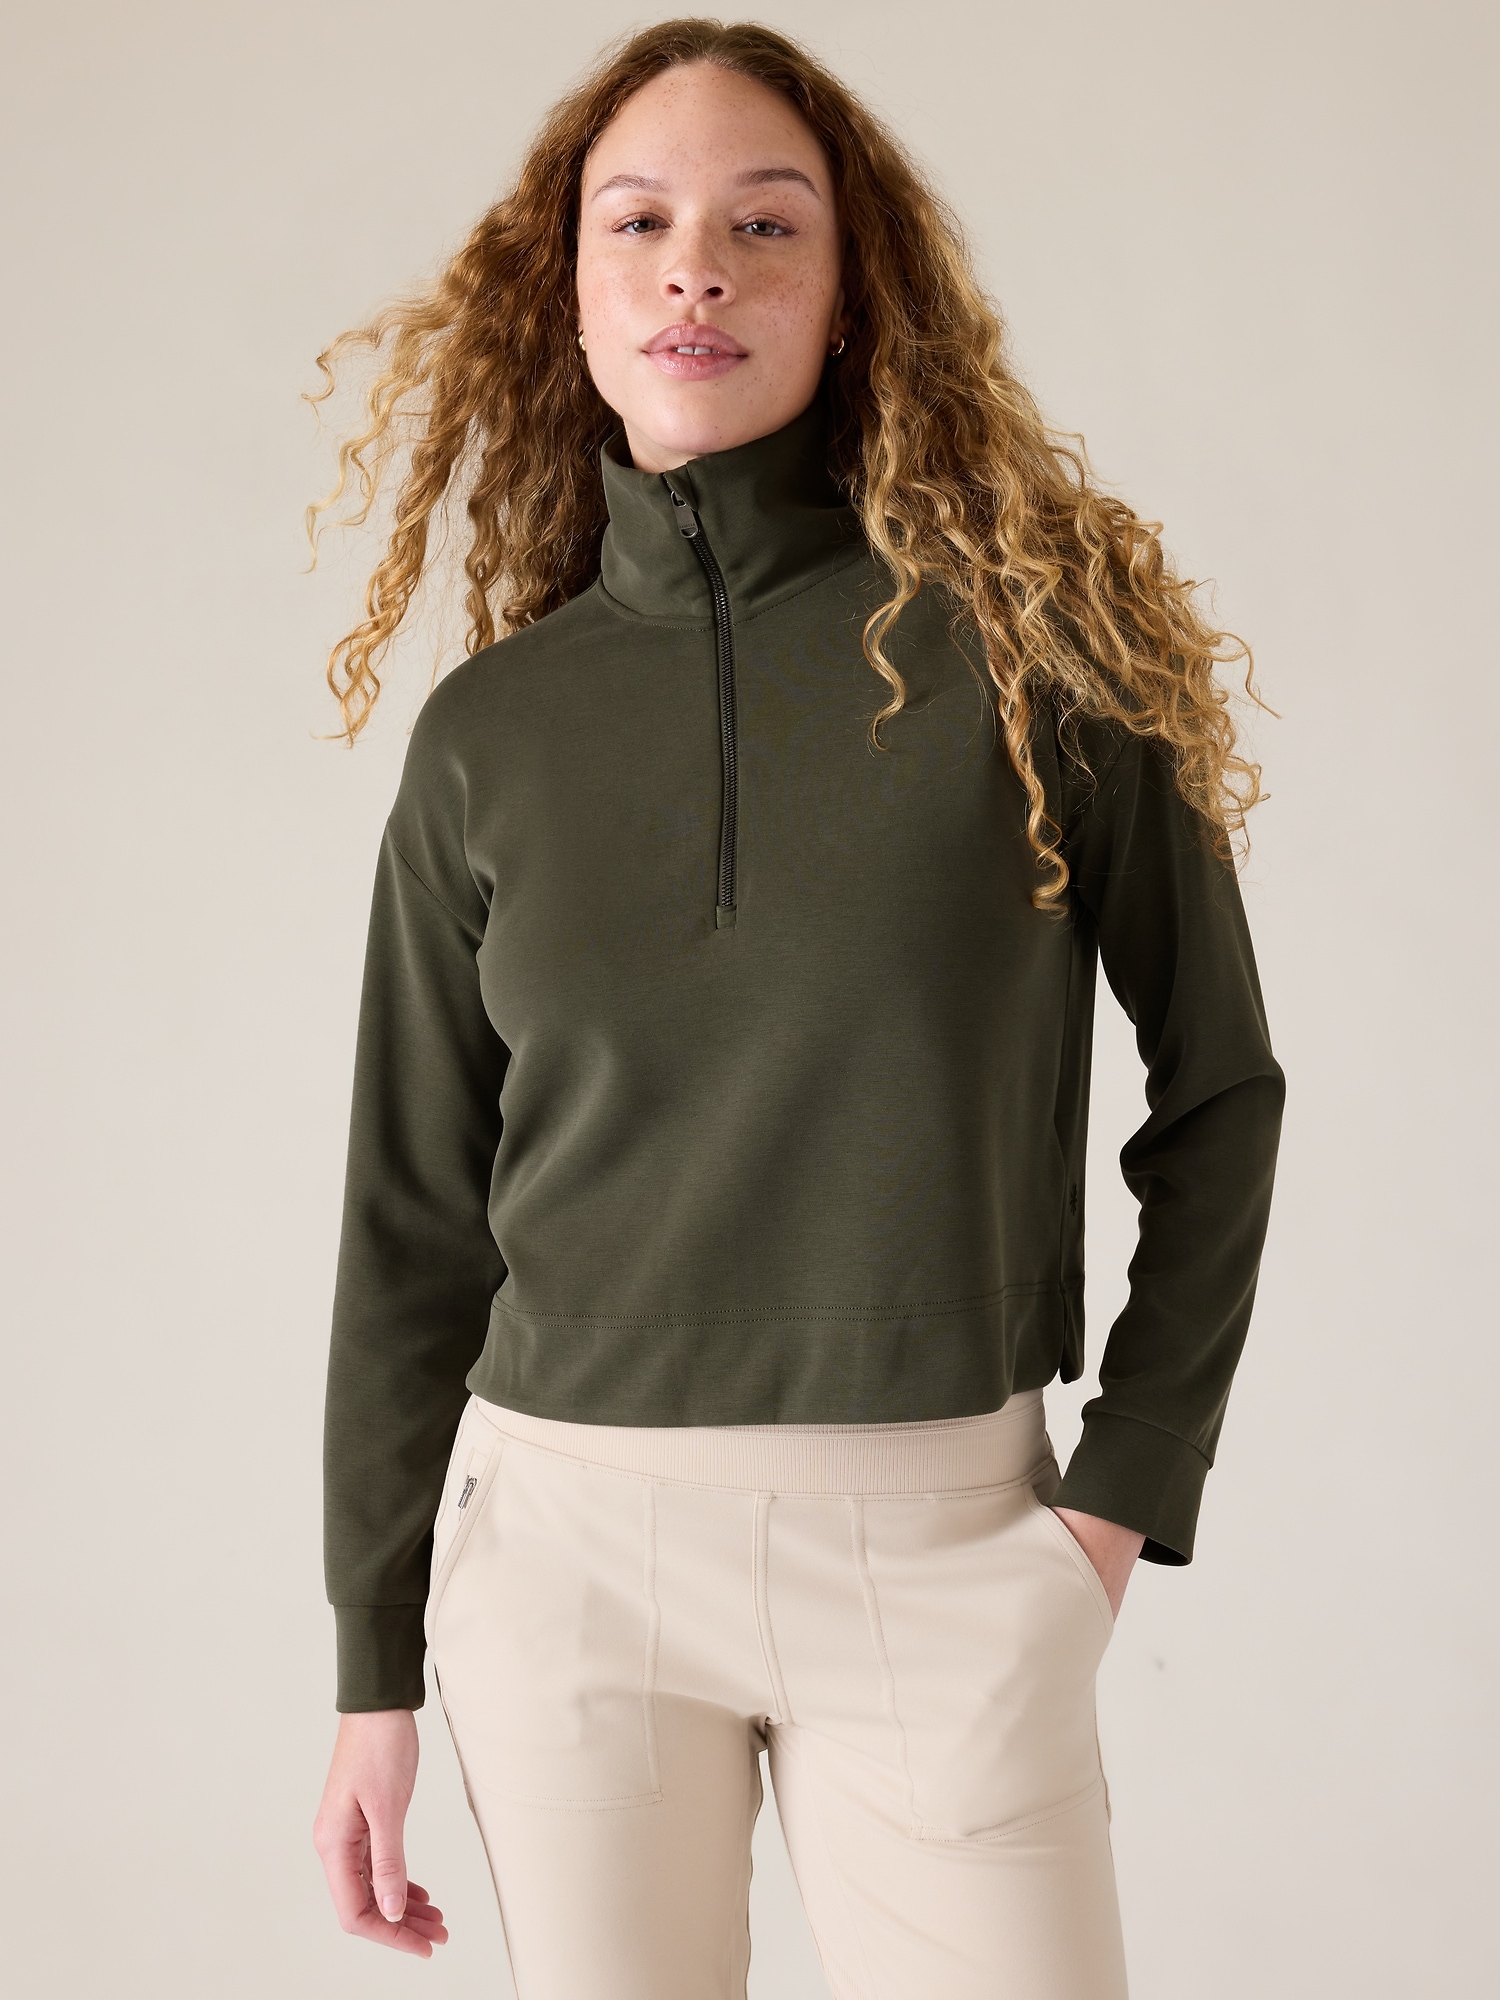  THE GYM PEOPLE Womens Half Zip Pullover Sweatshirt Fleece  Stand Collar Crop Sweatshirt